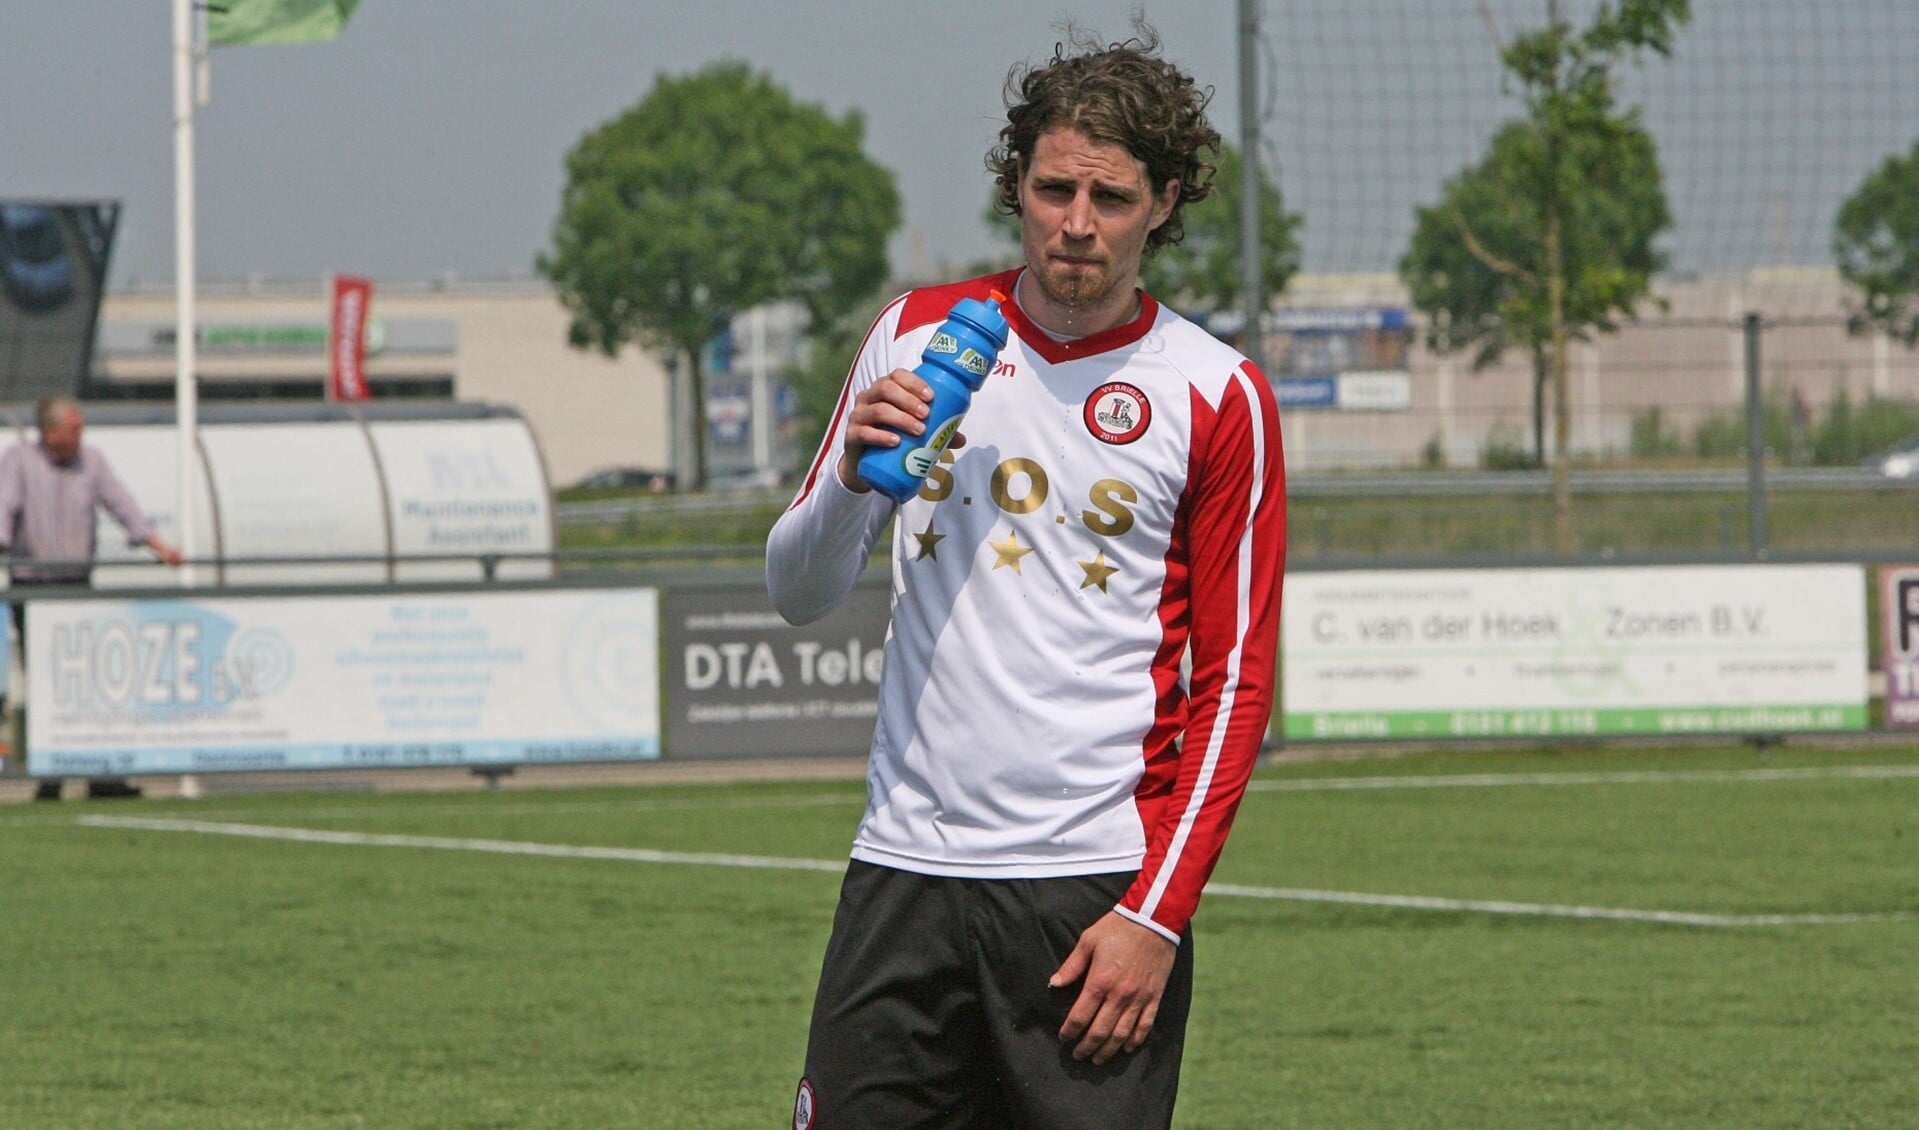 De strafschop van Marcel van den Berg werd door Heinenoord-keeper Dylan Heinen gekeerd. (Archieffoto: Wil van Balen)